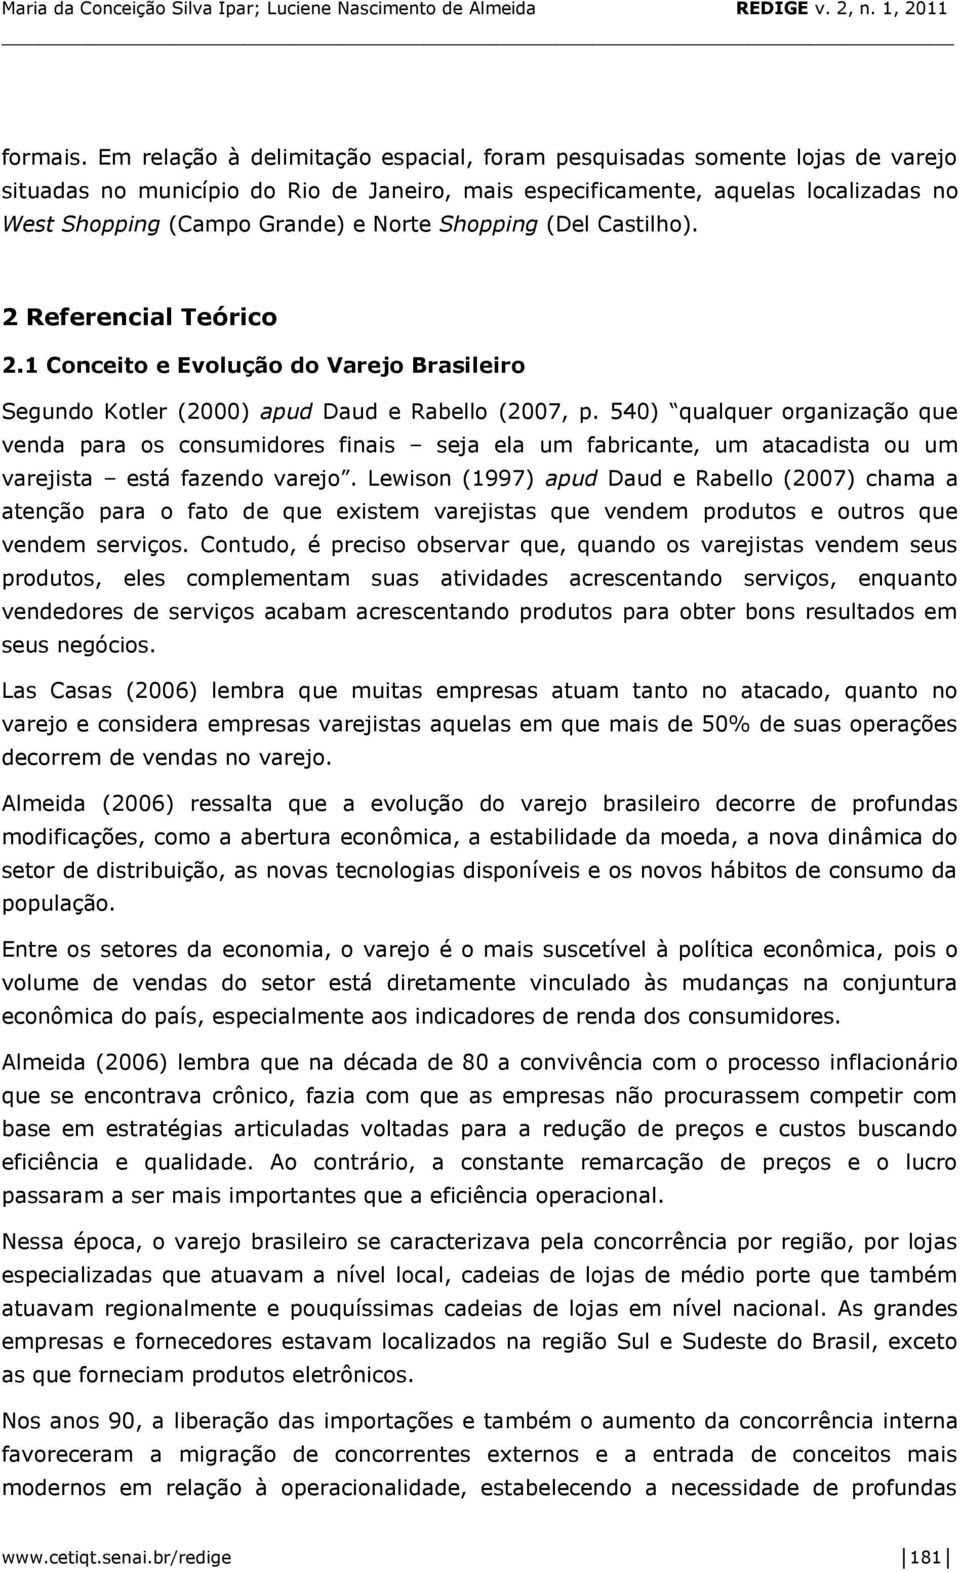 Shopping (Del Castilho). 2 Referencial Teórico 2.1 Conceito e Evolução do Varejo Brasileiro Segundo Kotler (2000) apud Daud e Rabello (2007, p.